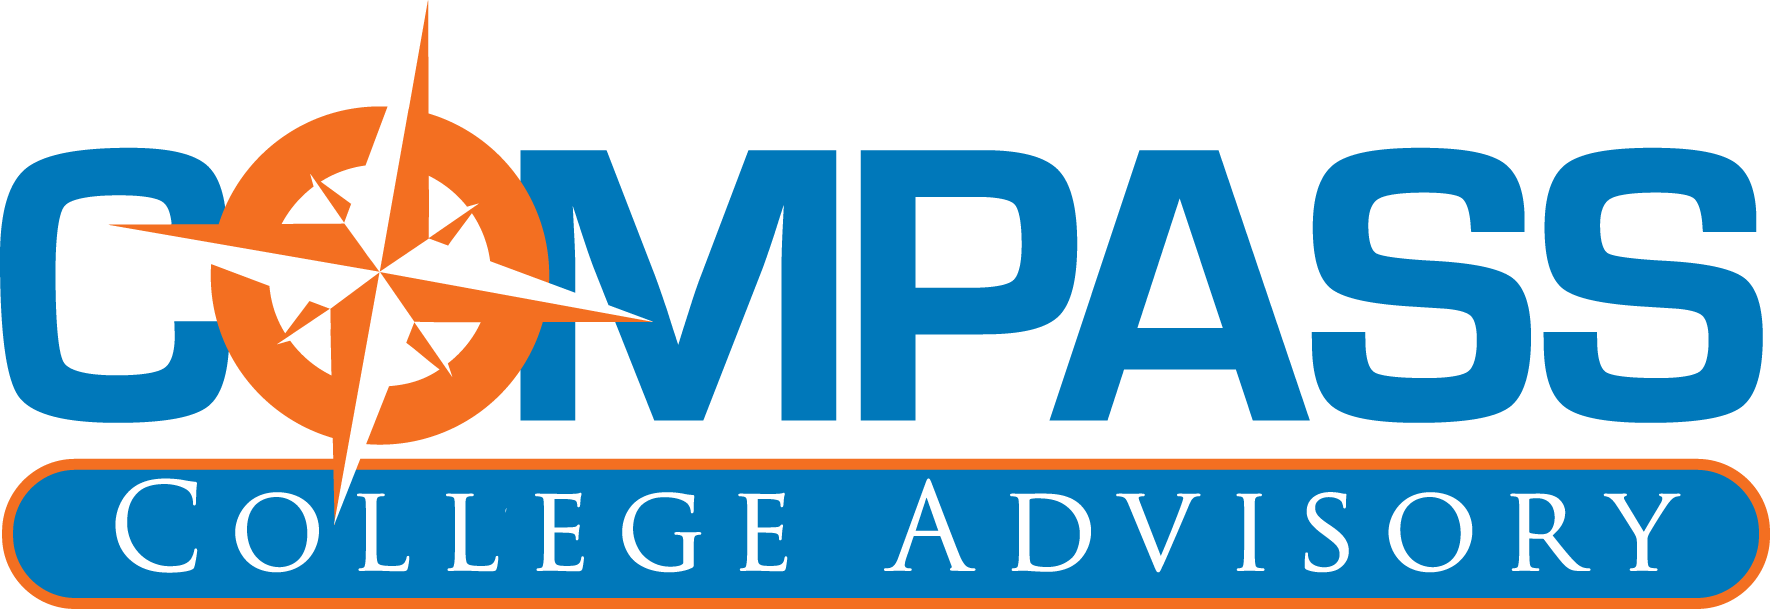 Compass College Advisory logo